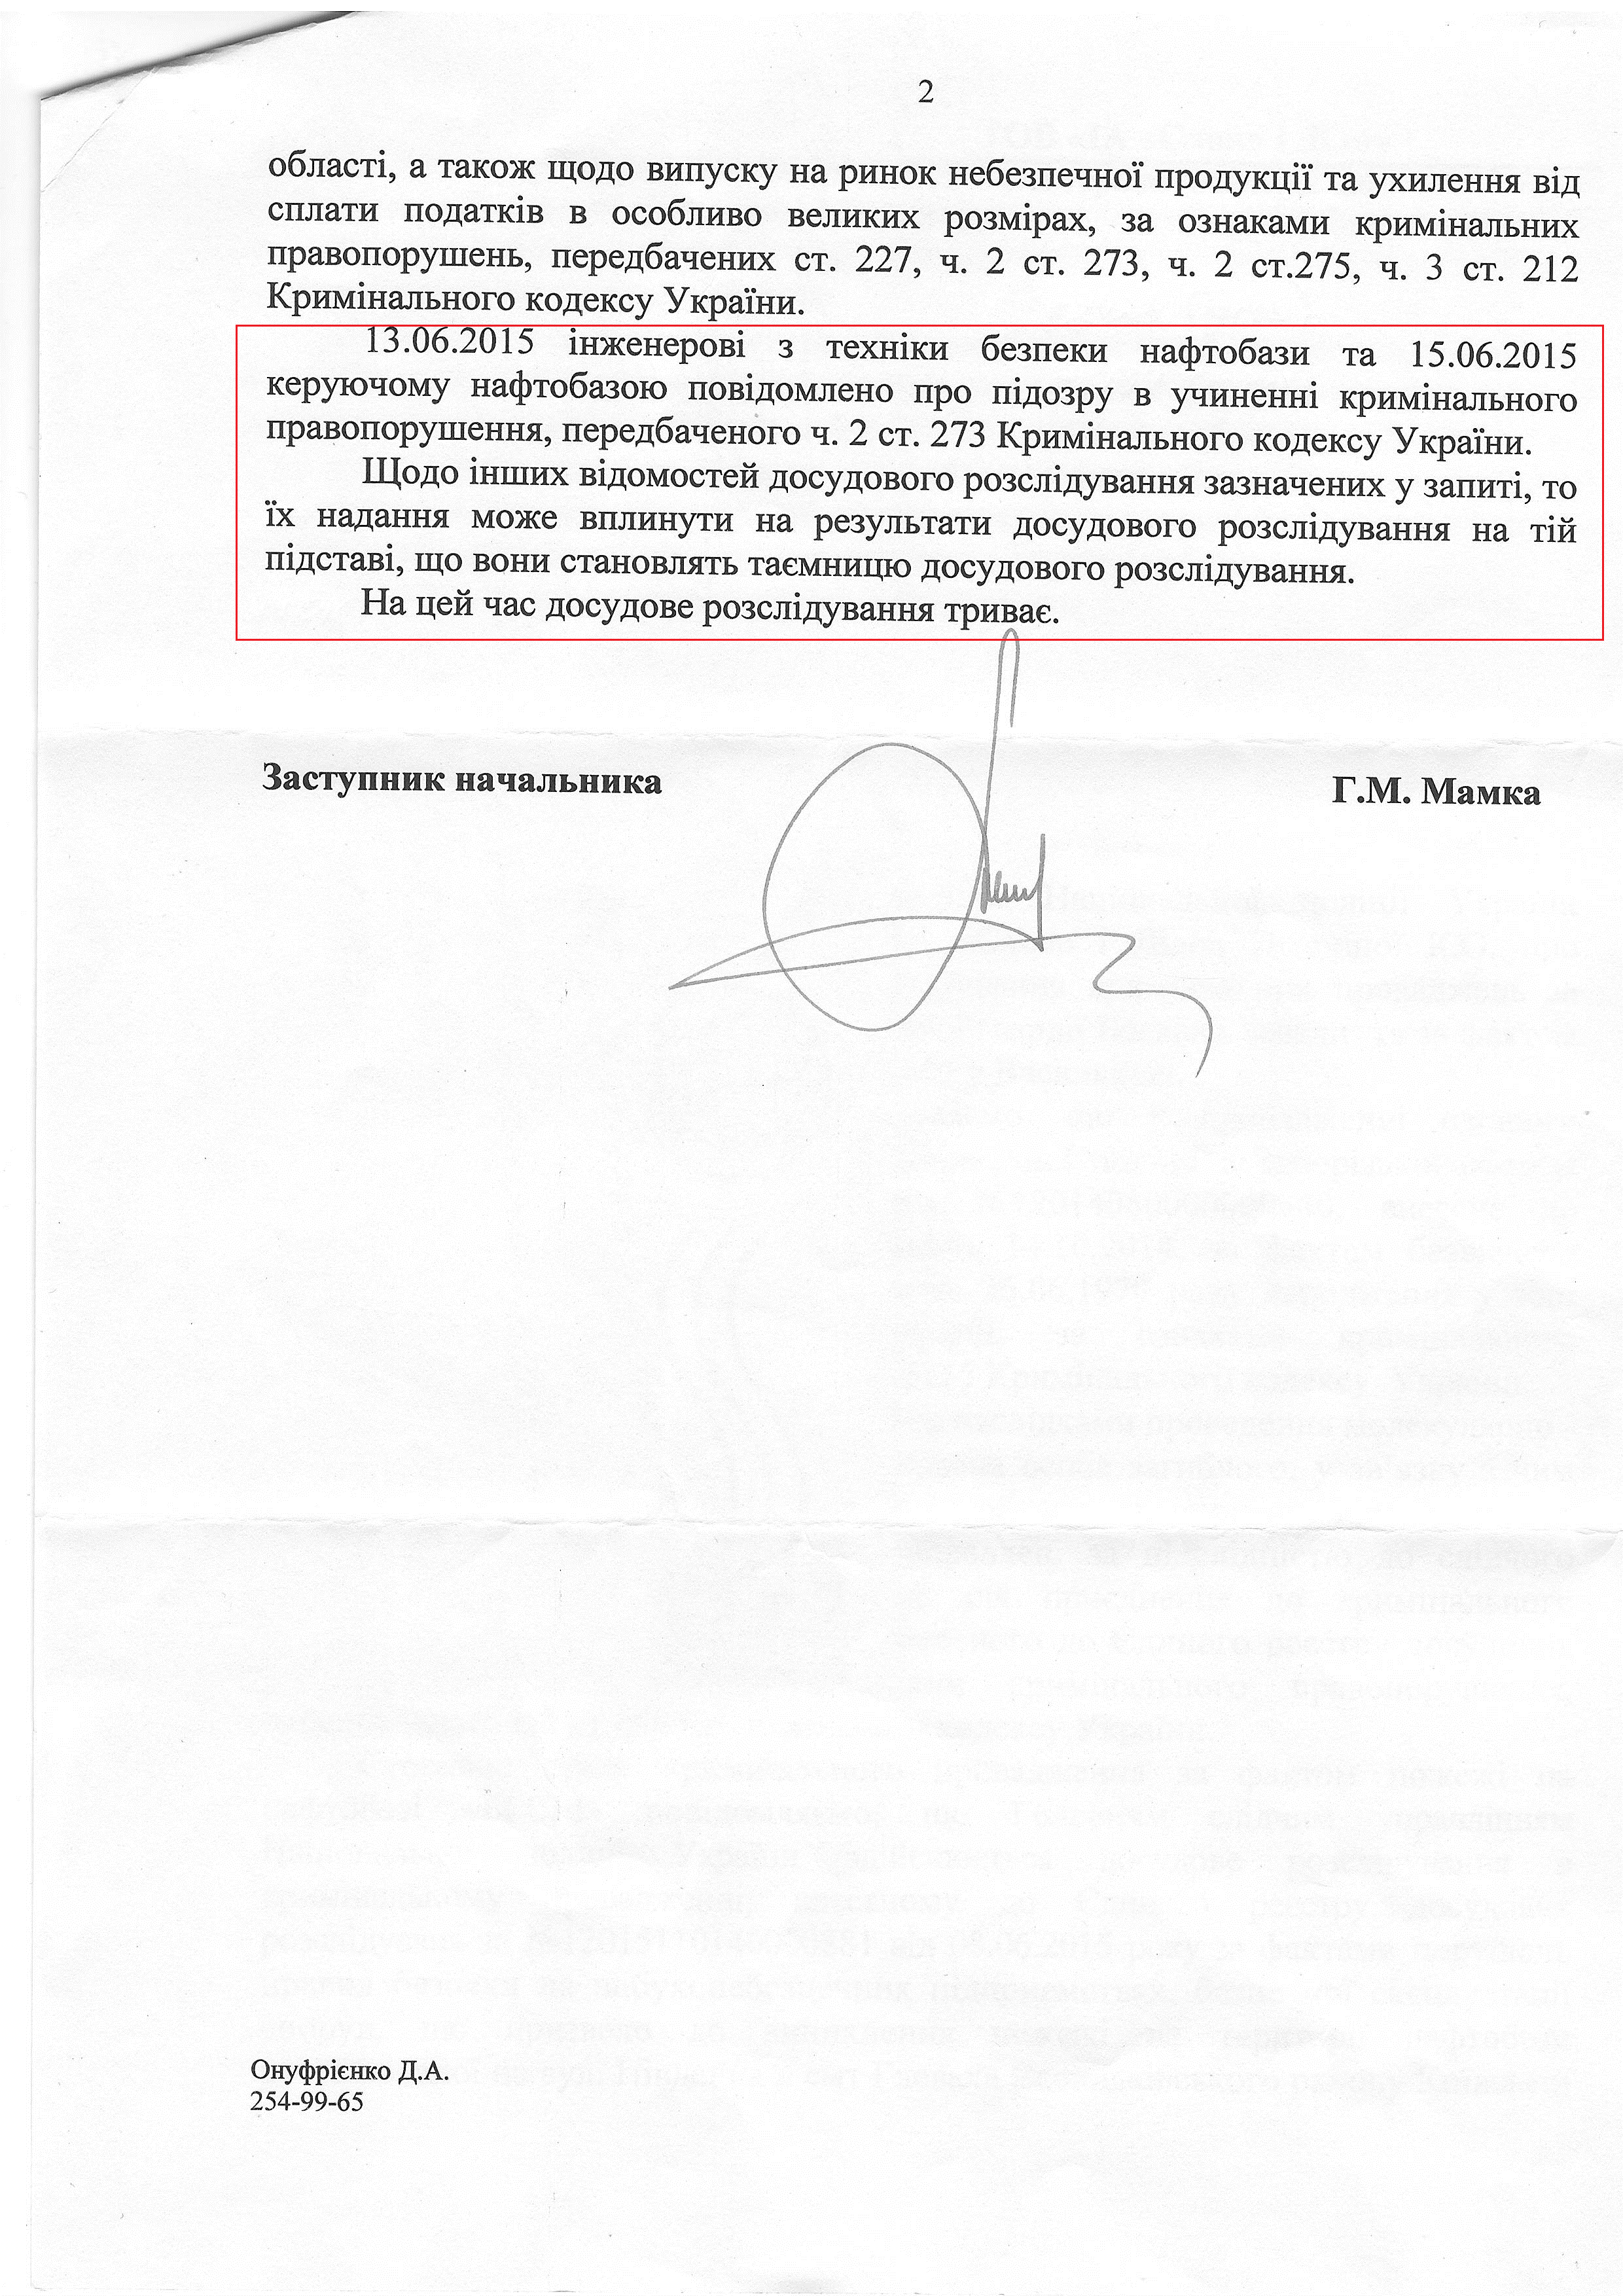 Лист Національної поліції України від 9 грудня 2015 року